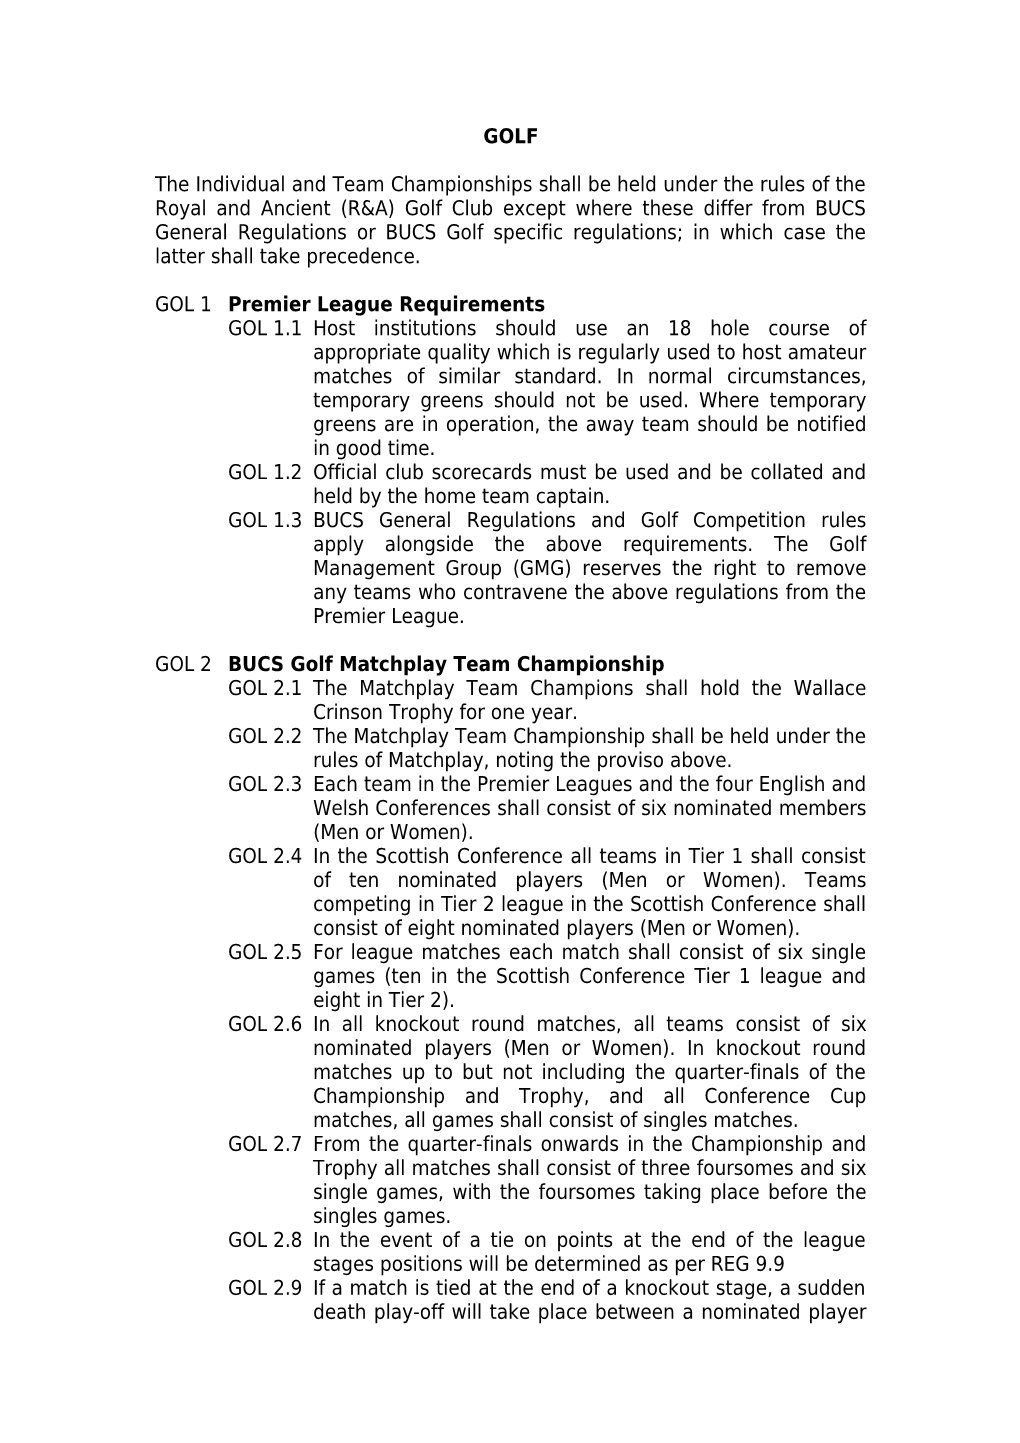 GOL 1 Premier League Requirements